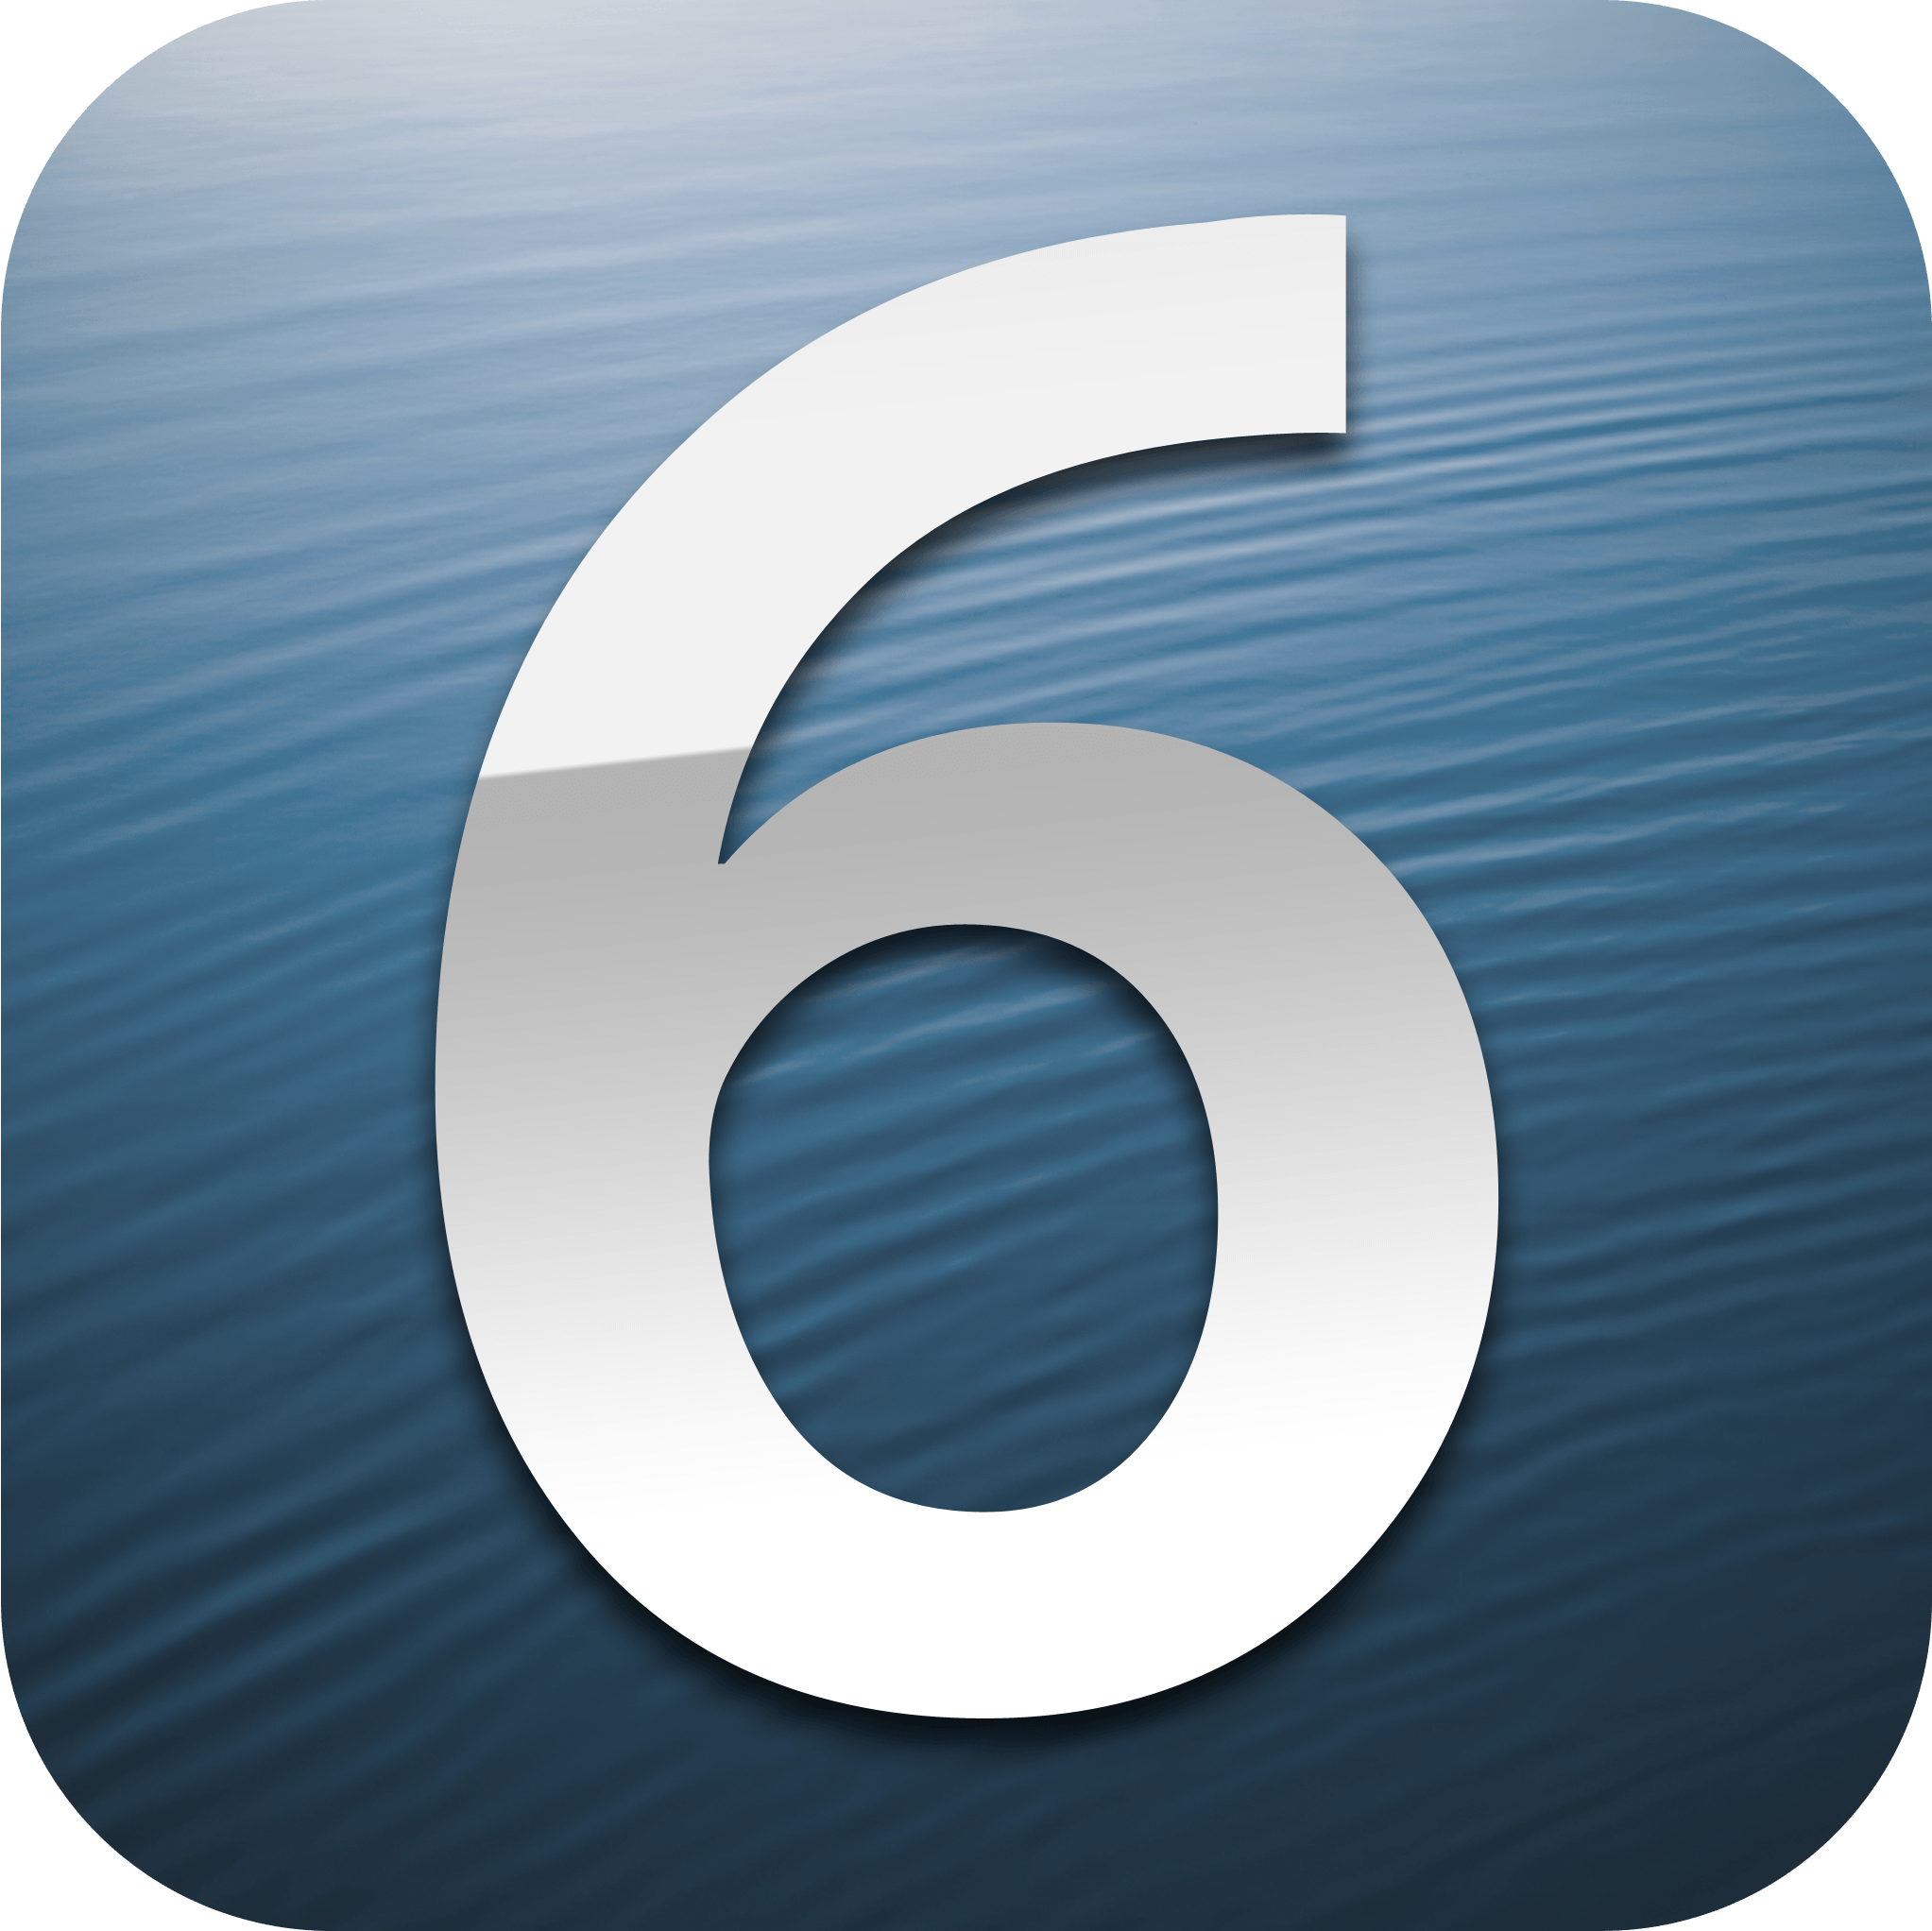 6 Logo - IOS 6 logo (2).png